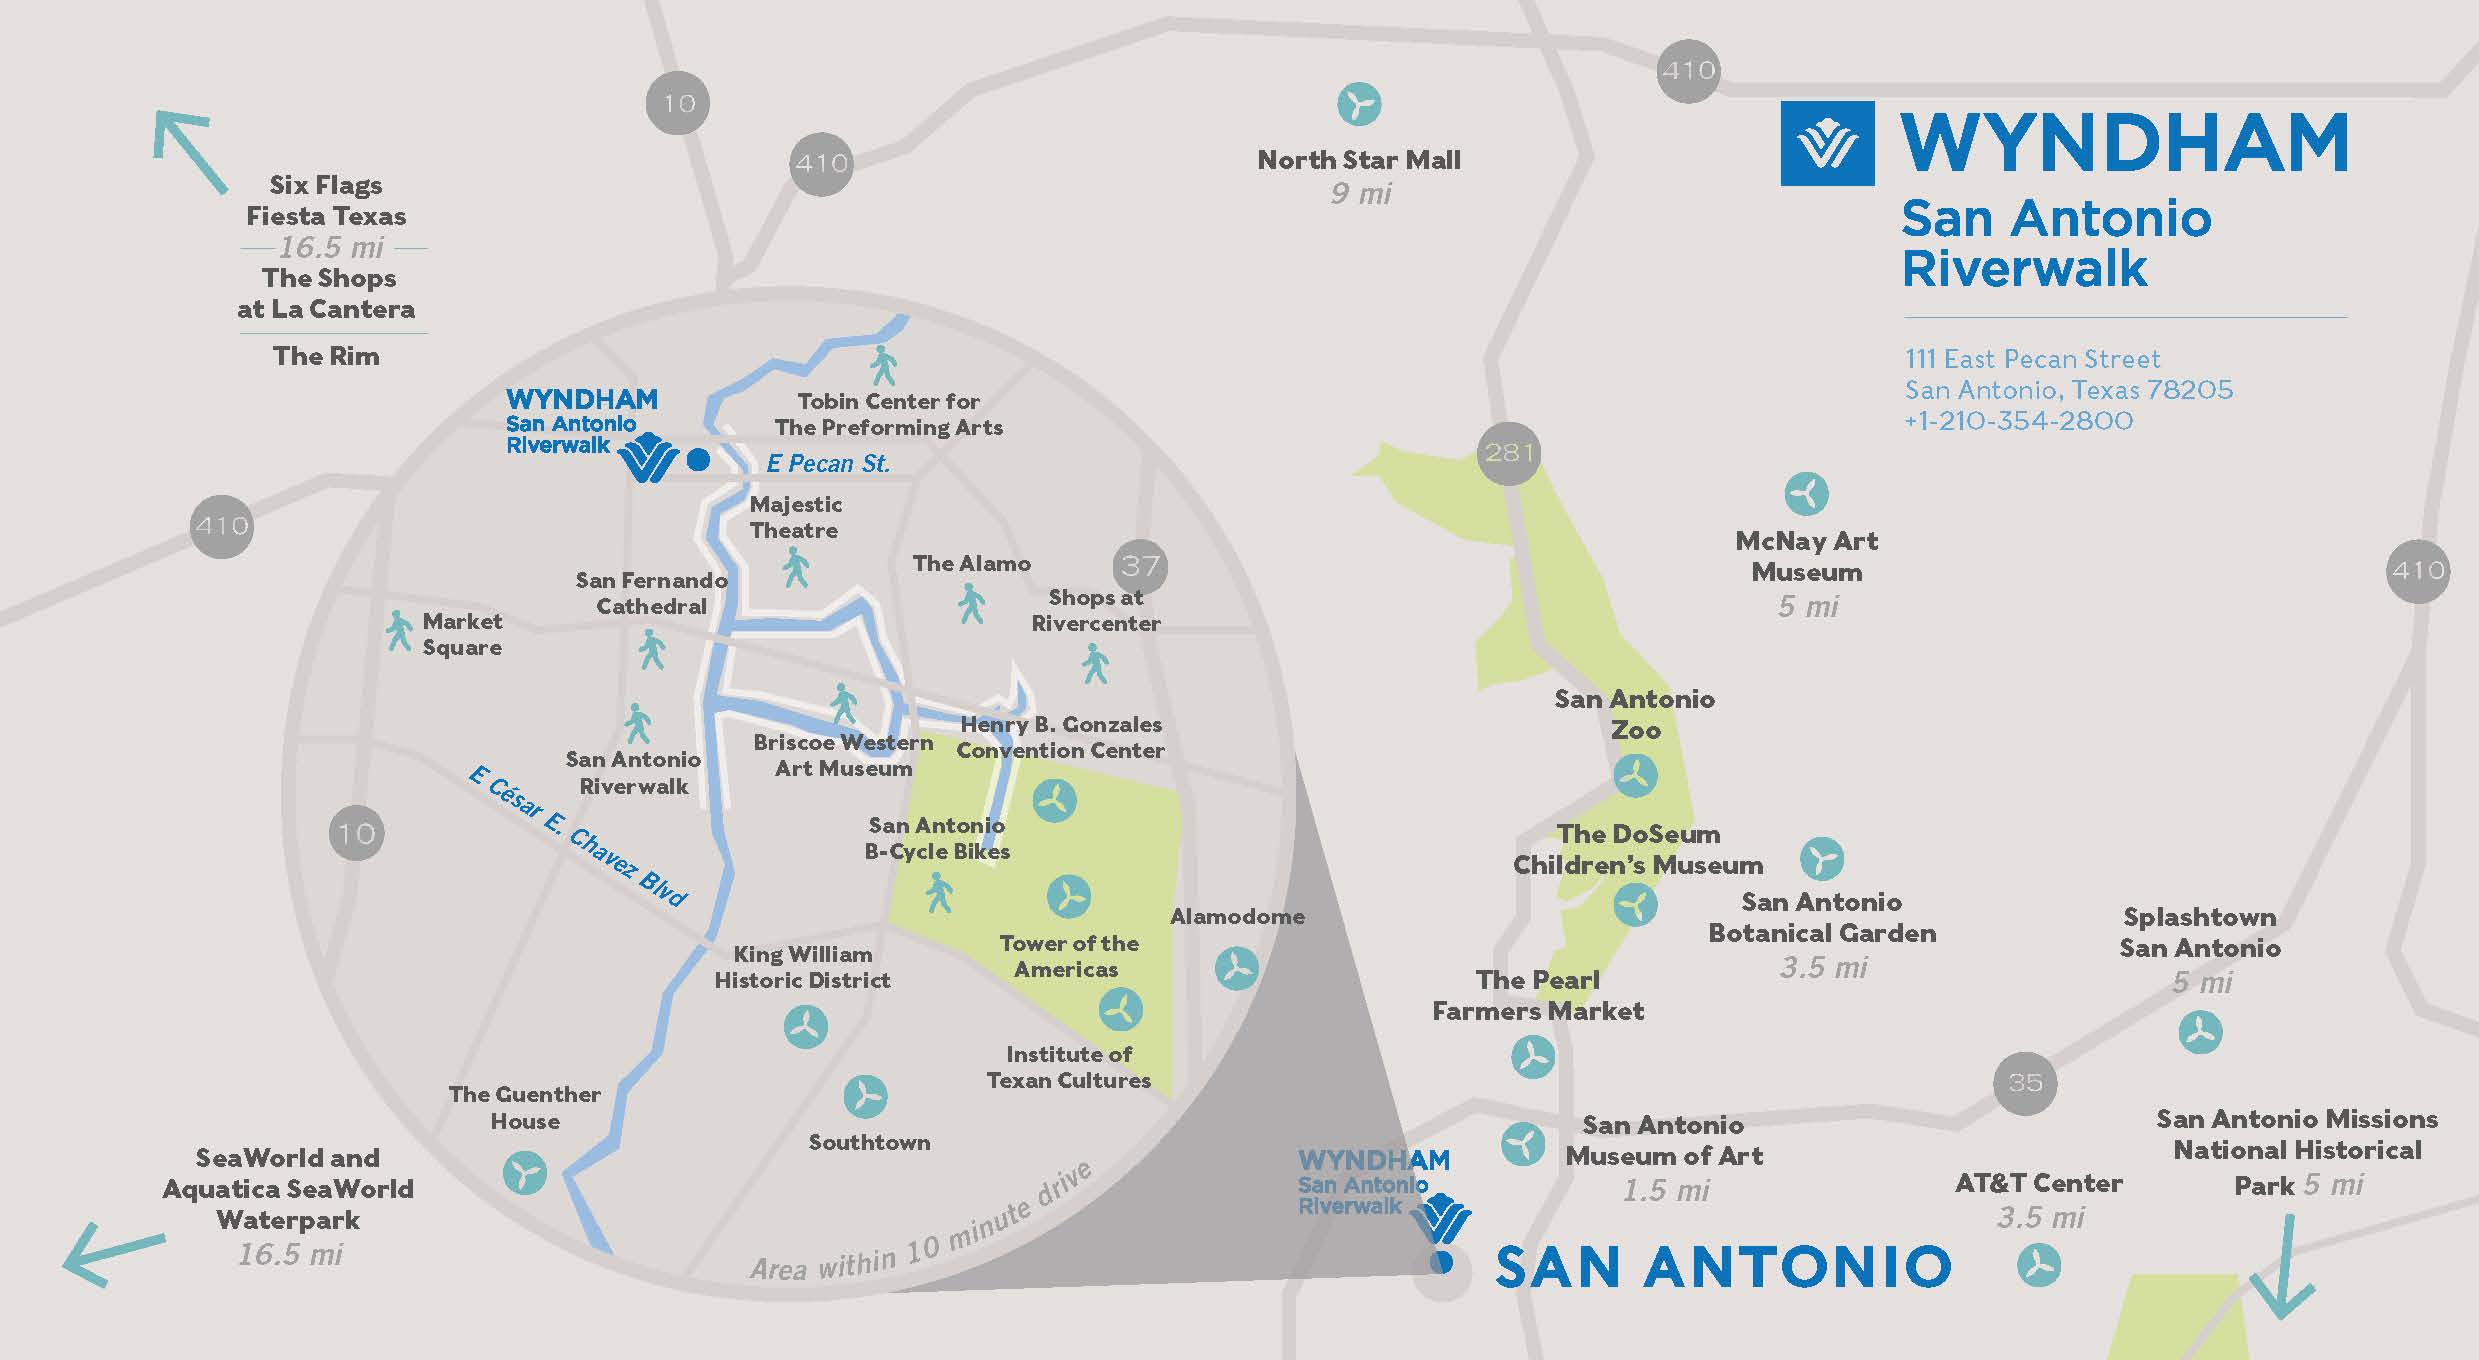 Wyndham San Antonio River Walk Hotel Area Map - Map Of Hotels In San Antonio Texas